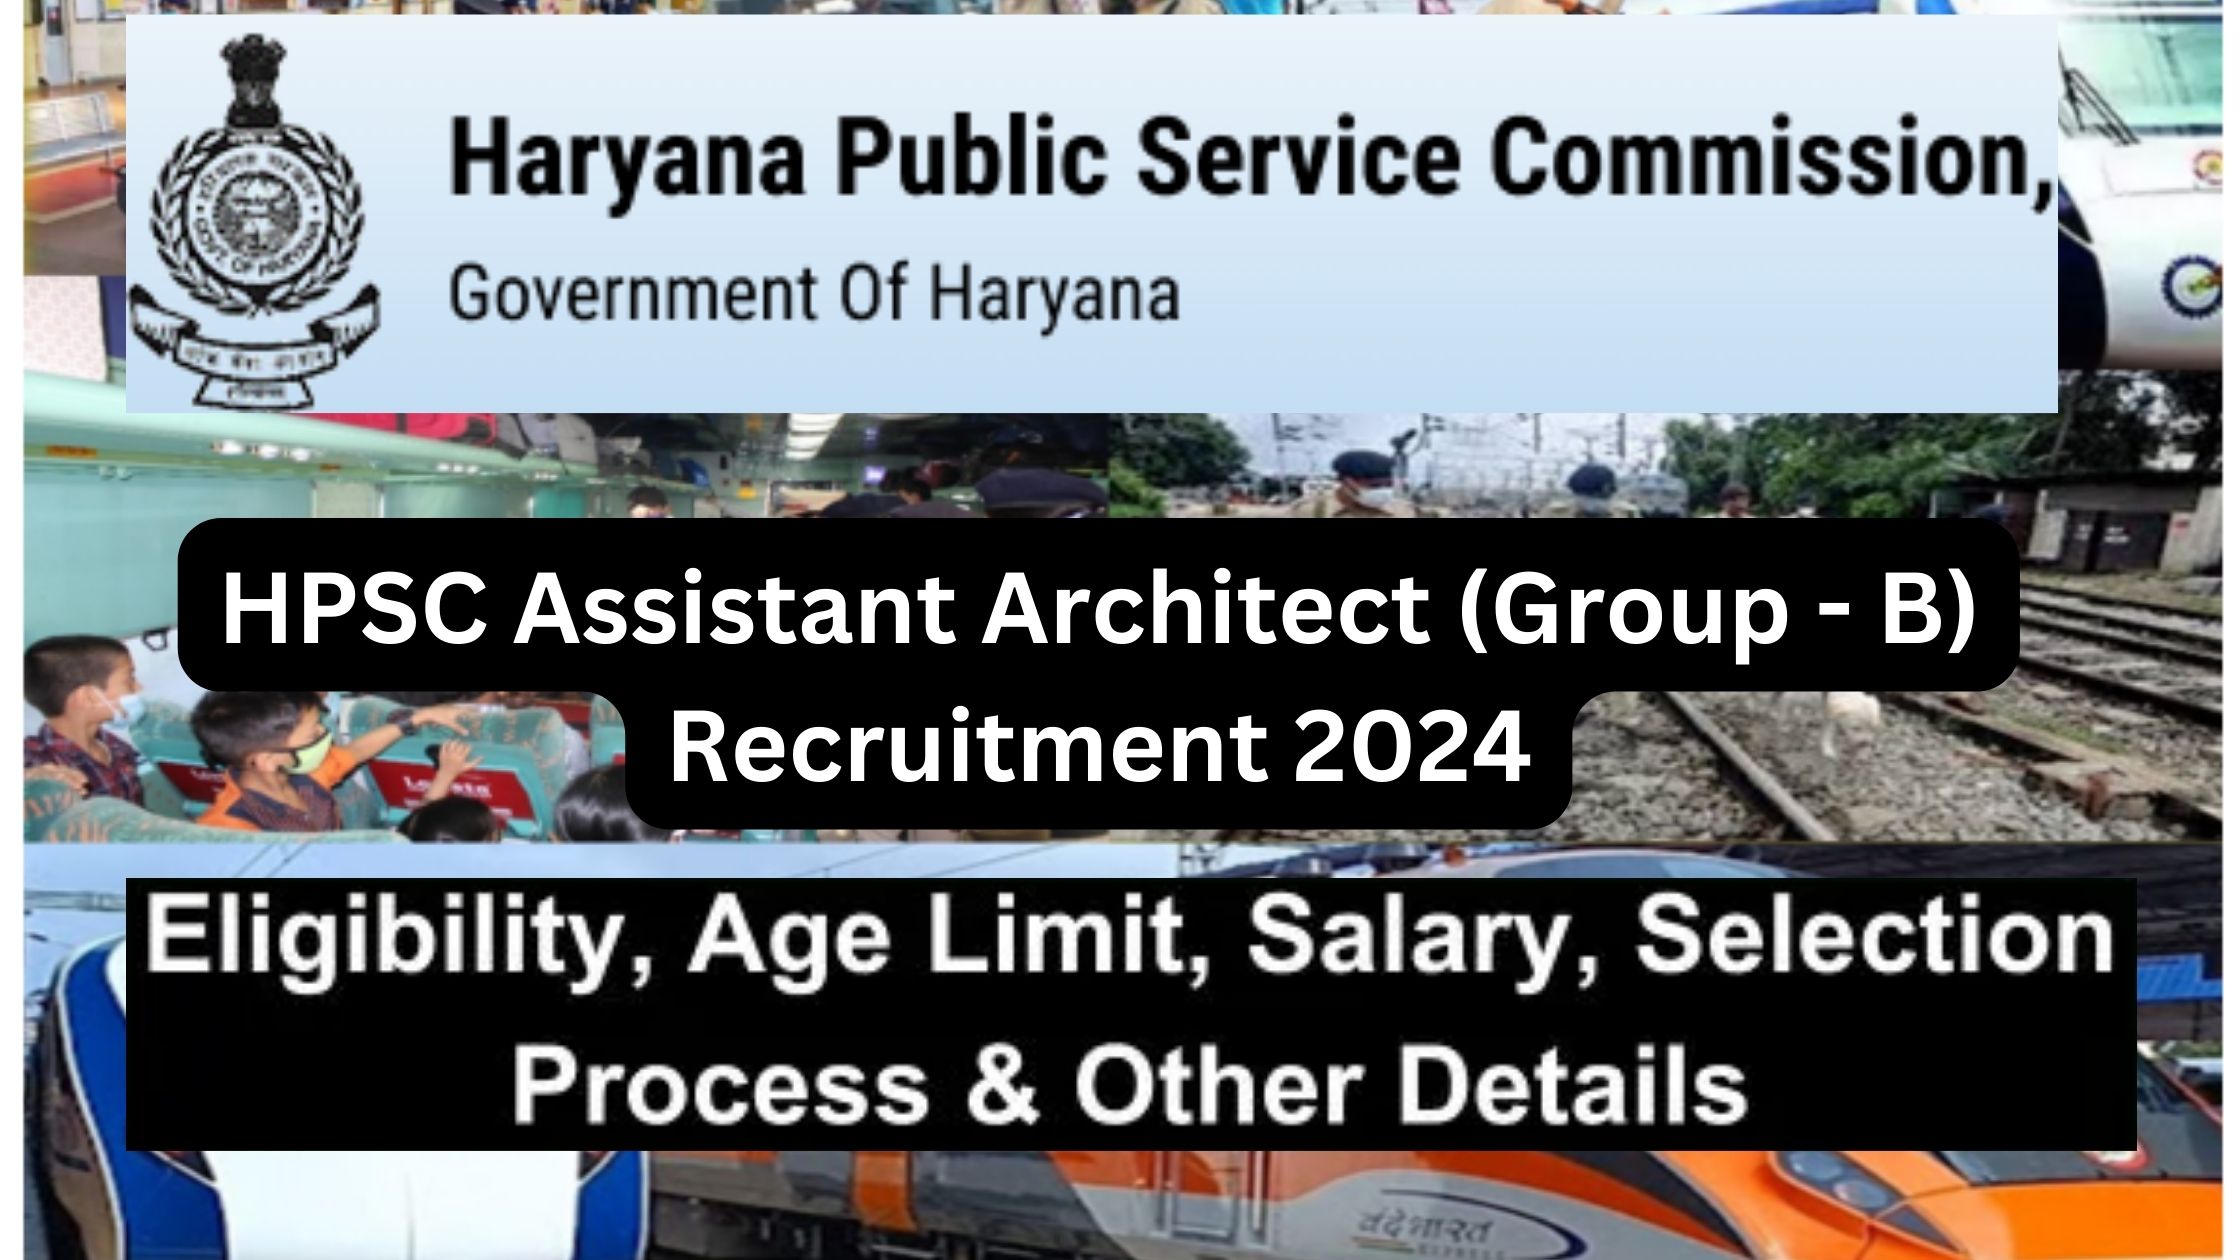 HPSC Assistant Architect (Group - B) Recruitment 2024